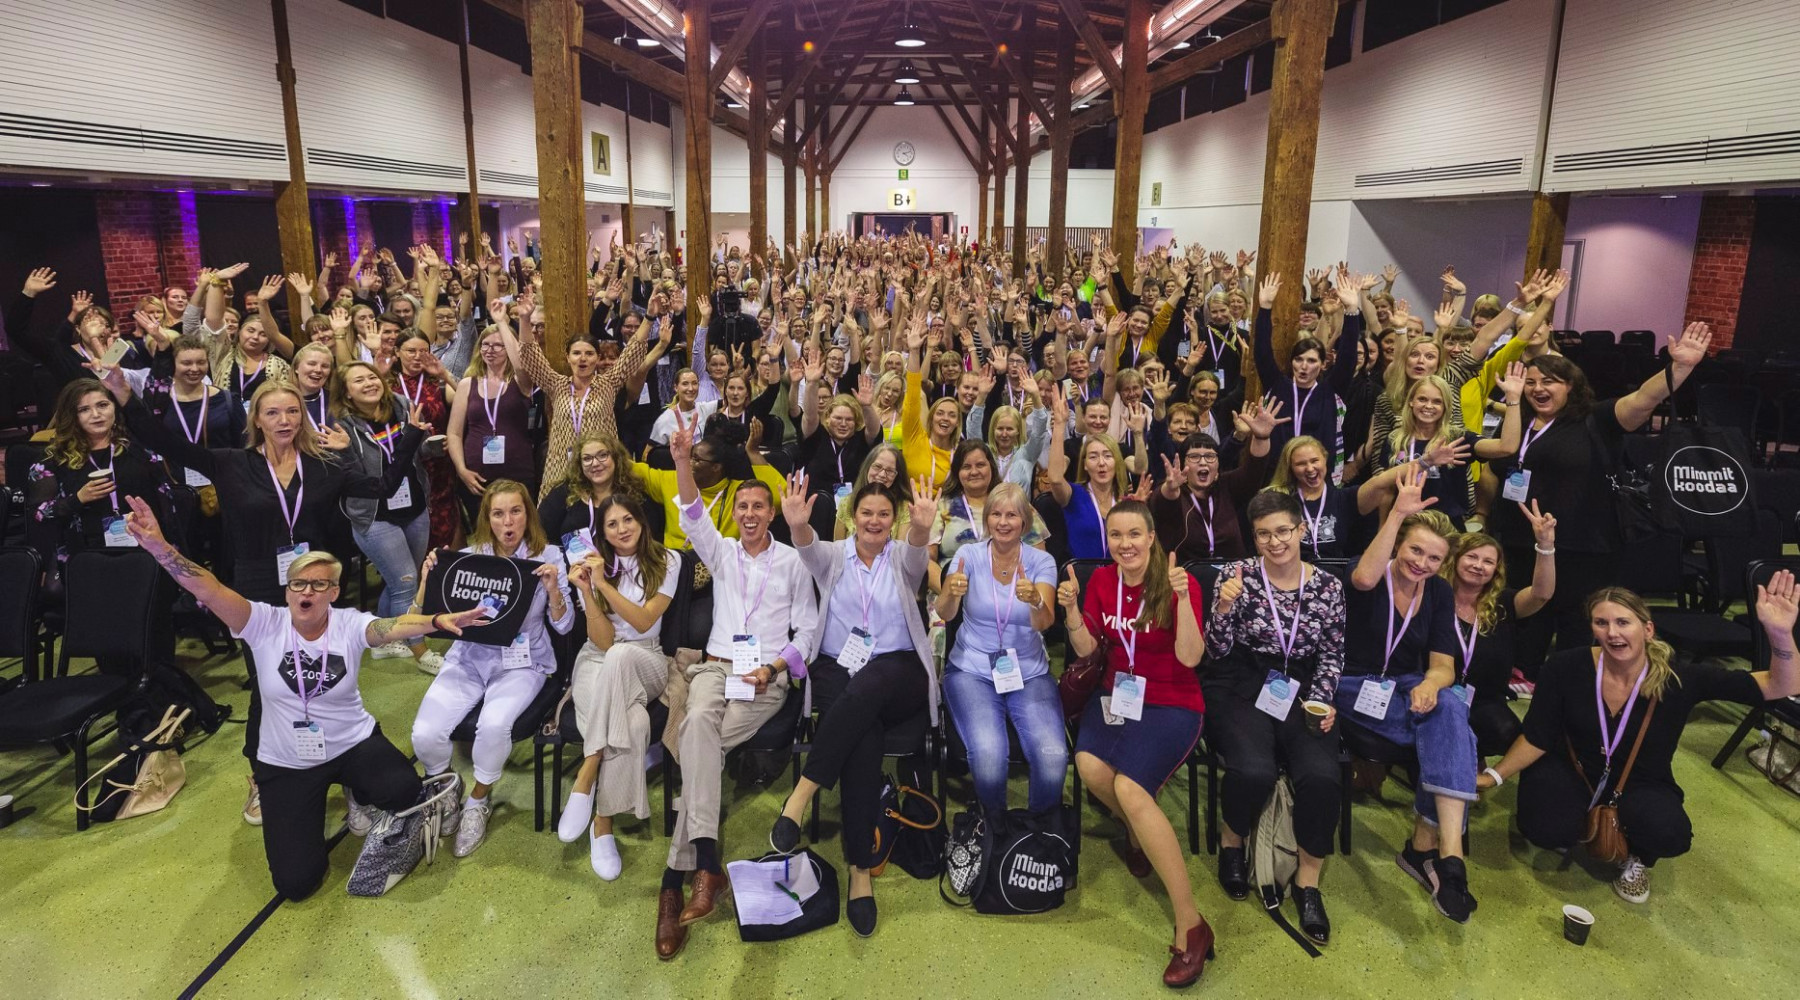 Ein paar hundert Menschen, fast ausschließlich Frauen, posieren für ein Gruppenfoto in einer Halle bei einem Workshop-Event.